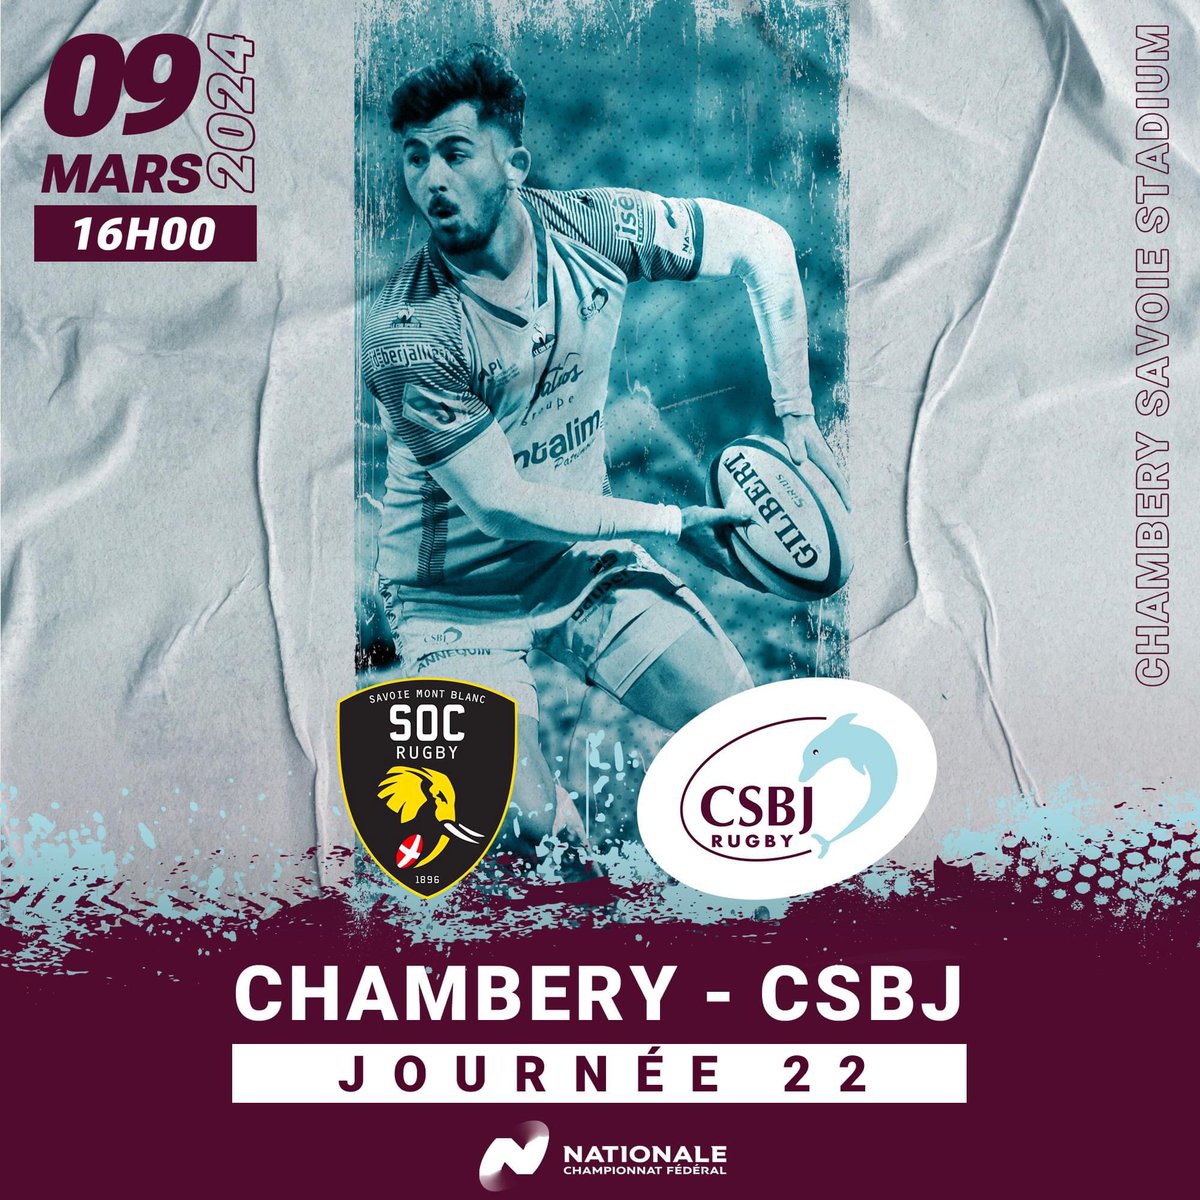 𝗝𝗢𝗨𝗥 𝗗𝗘 𝗠𝗔𝗔𝗔𝗧𝗖𝗛 !👊 Cet après-midi à 16h00, notre équipe affronte Chambéry au Savoie Stadium pour un match important !! Notre équipe a besoin de son 16ème homme ! Tous derrière nos joueurs 🤩 GO GO GO ✊ 🏆 Nationale Rugby 🆚 Chambéry 📆 Samedi 9 mars 🕓 16h00